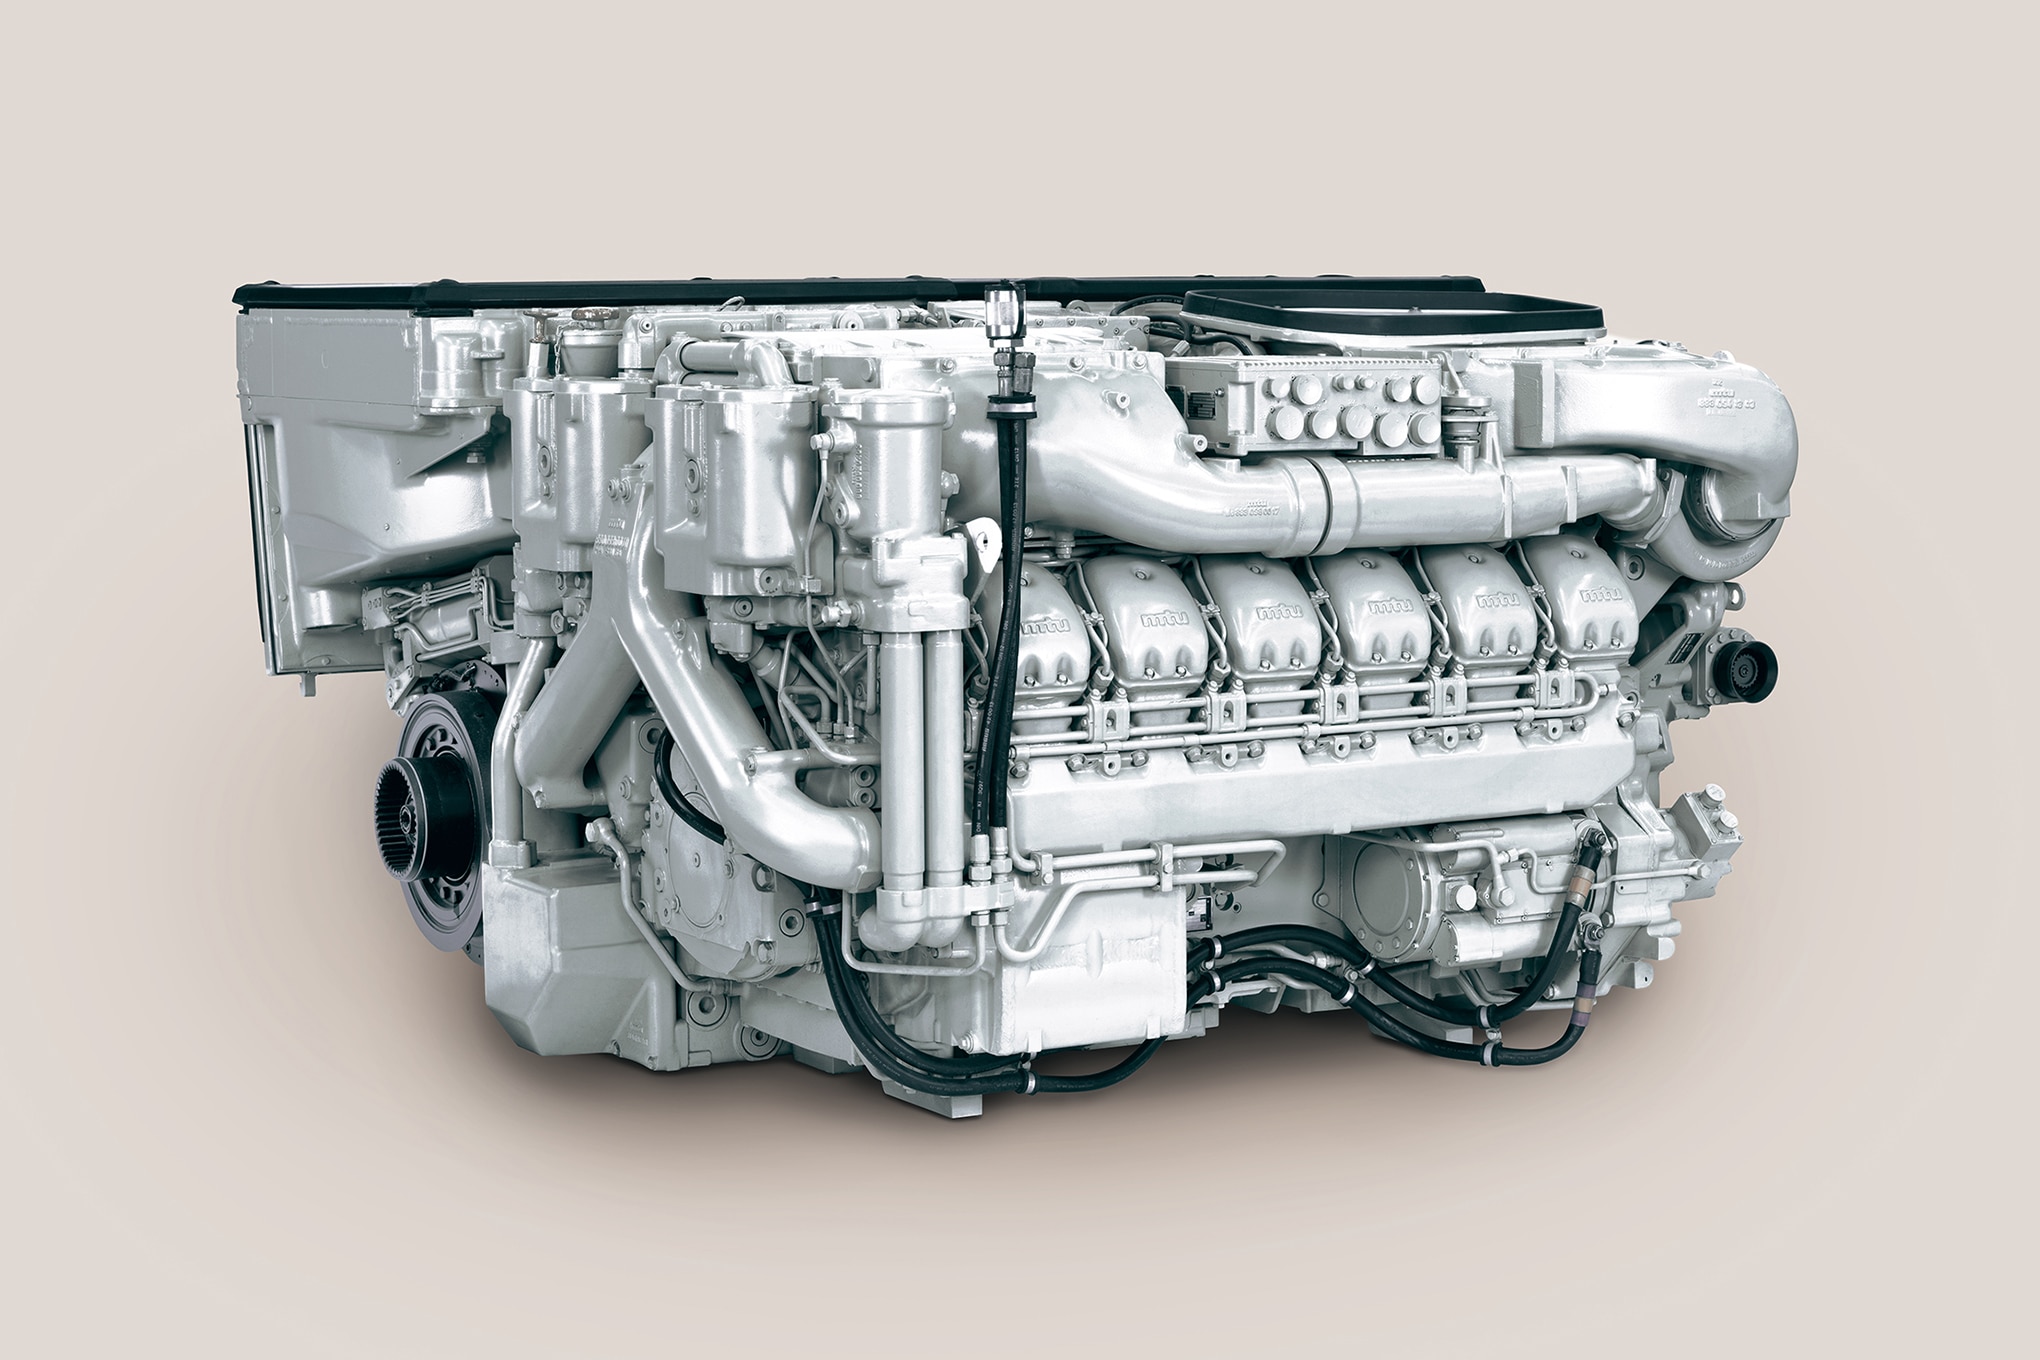 挑战者3将采用1500马力mtu883柴油发动机组和renk变速箱,以及全新的